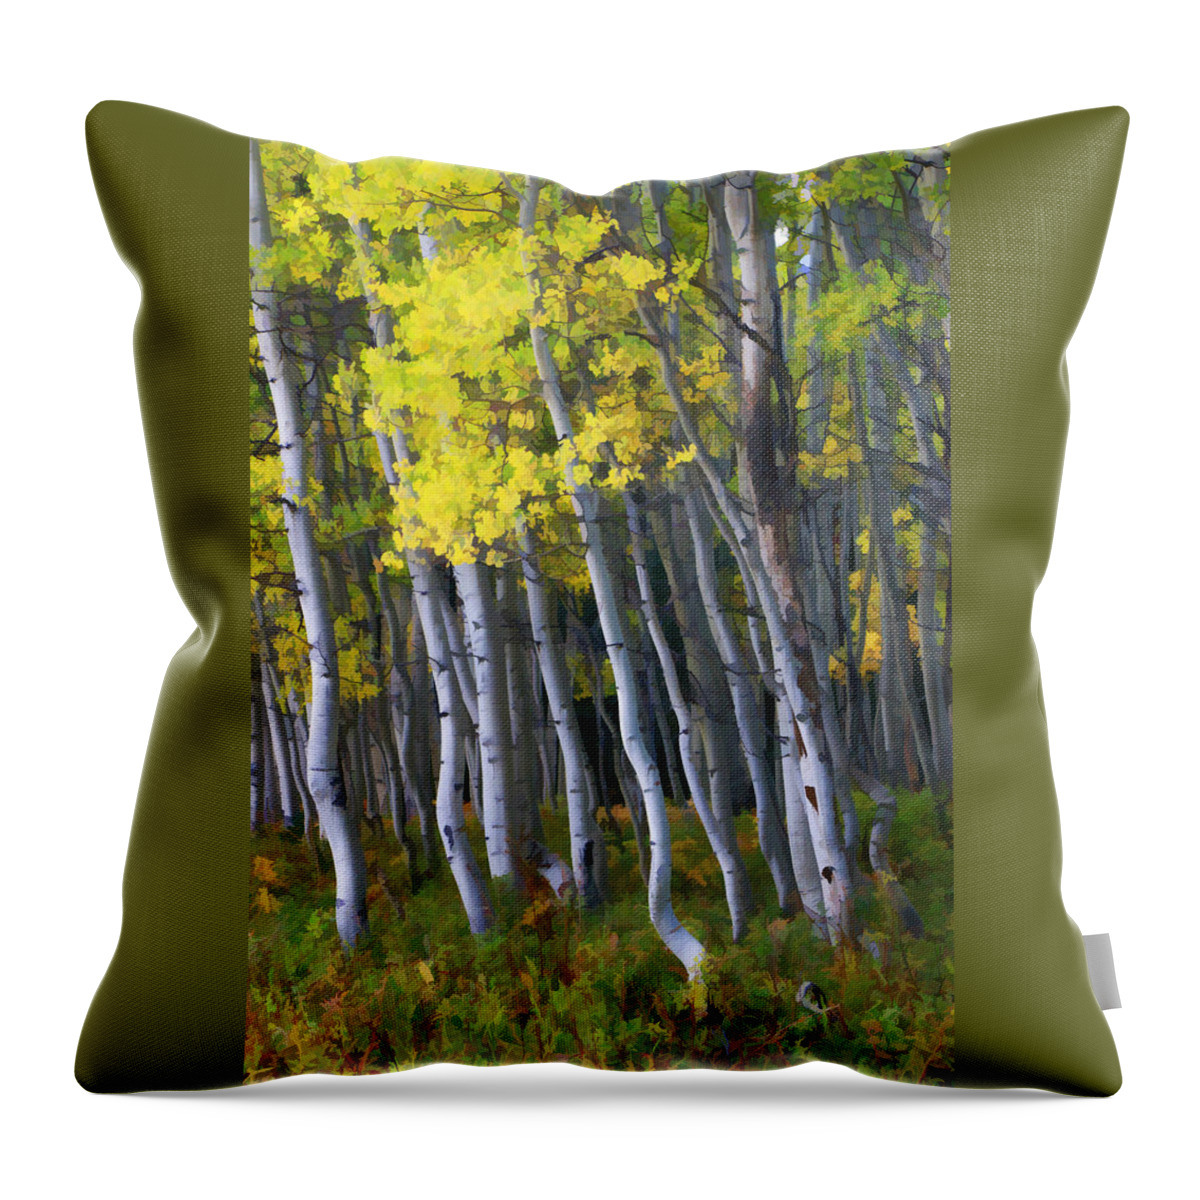 Wall Art Throw Pillow featuring the photograph Crested Butte Aspen Grove by Allen Beatty